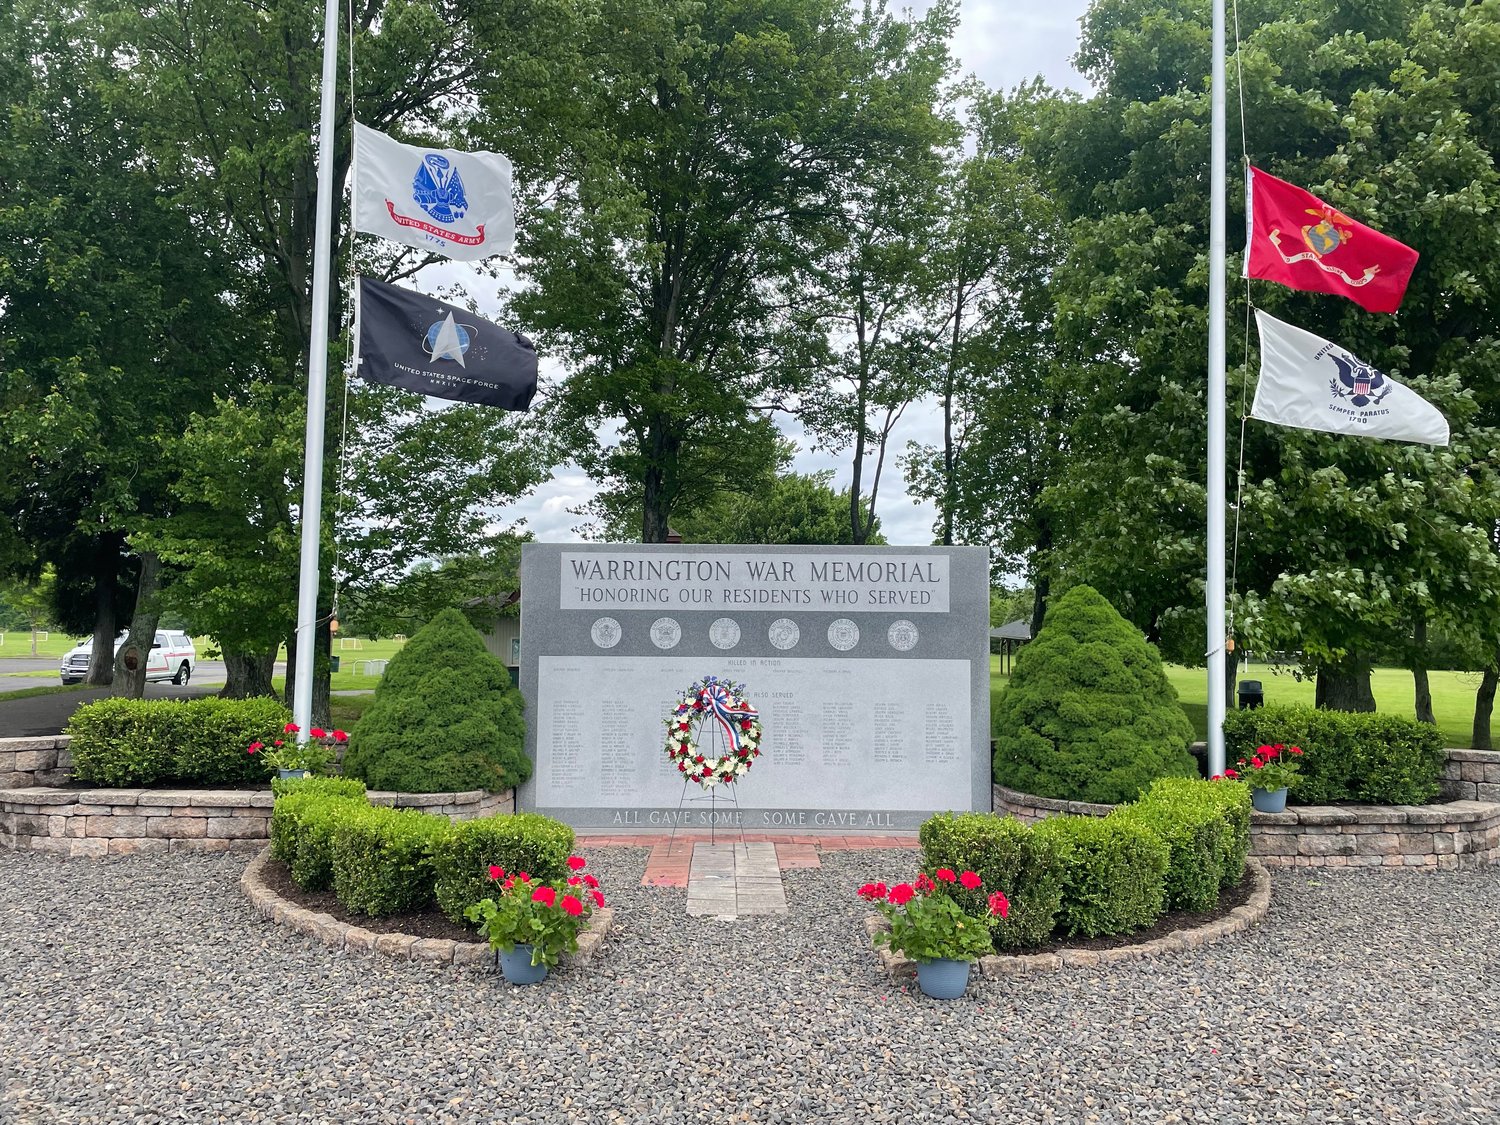 The Warrington War Memorial is located in IPW Memorial Fields.